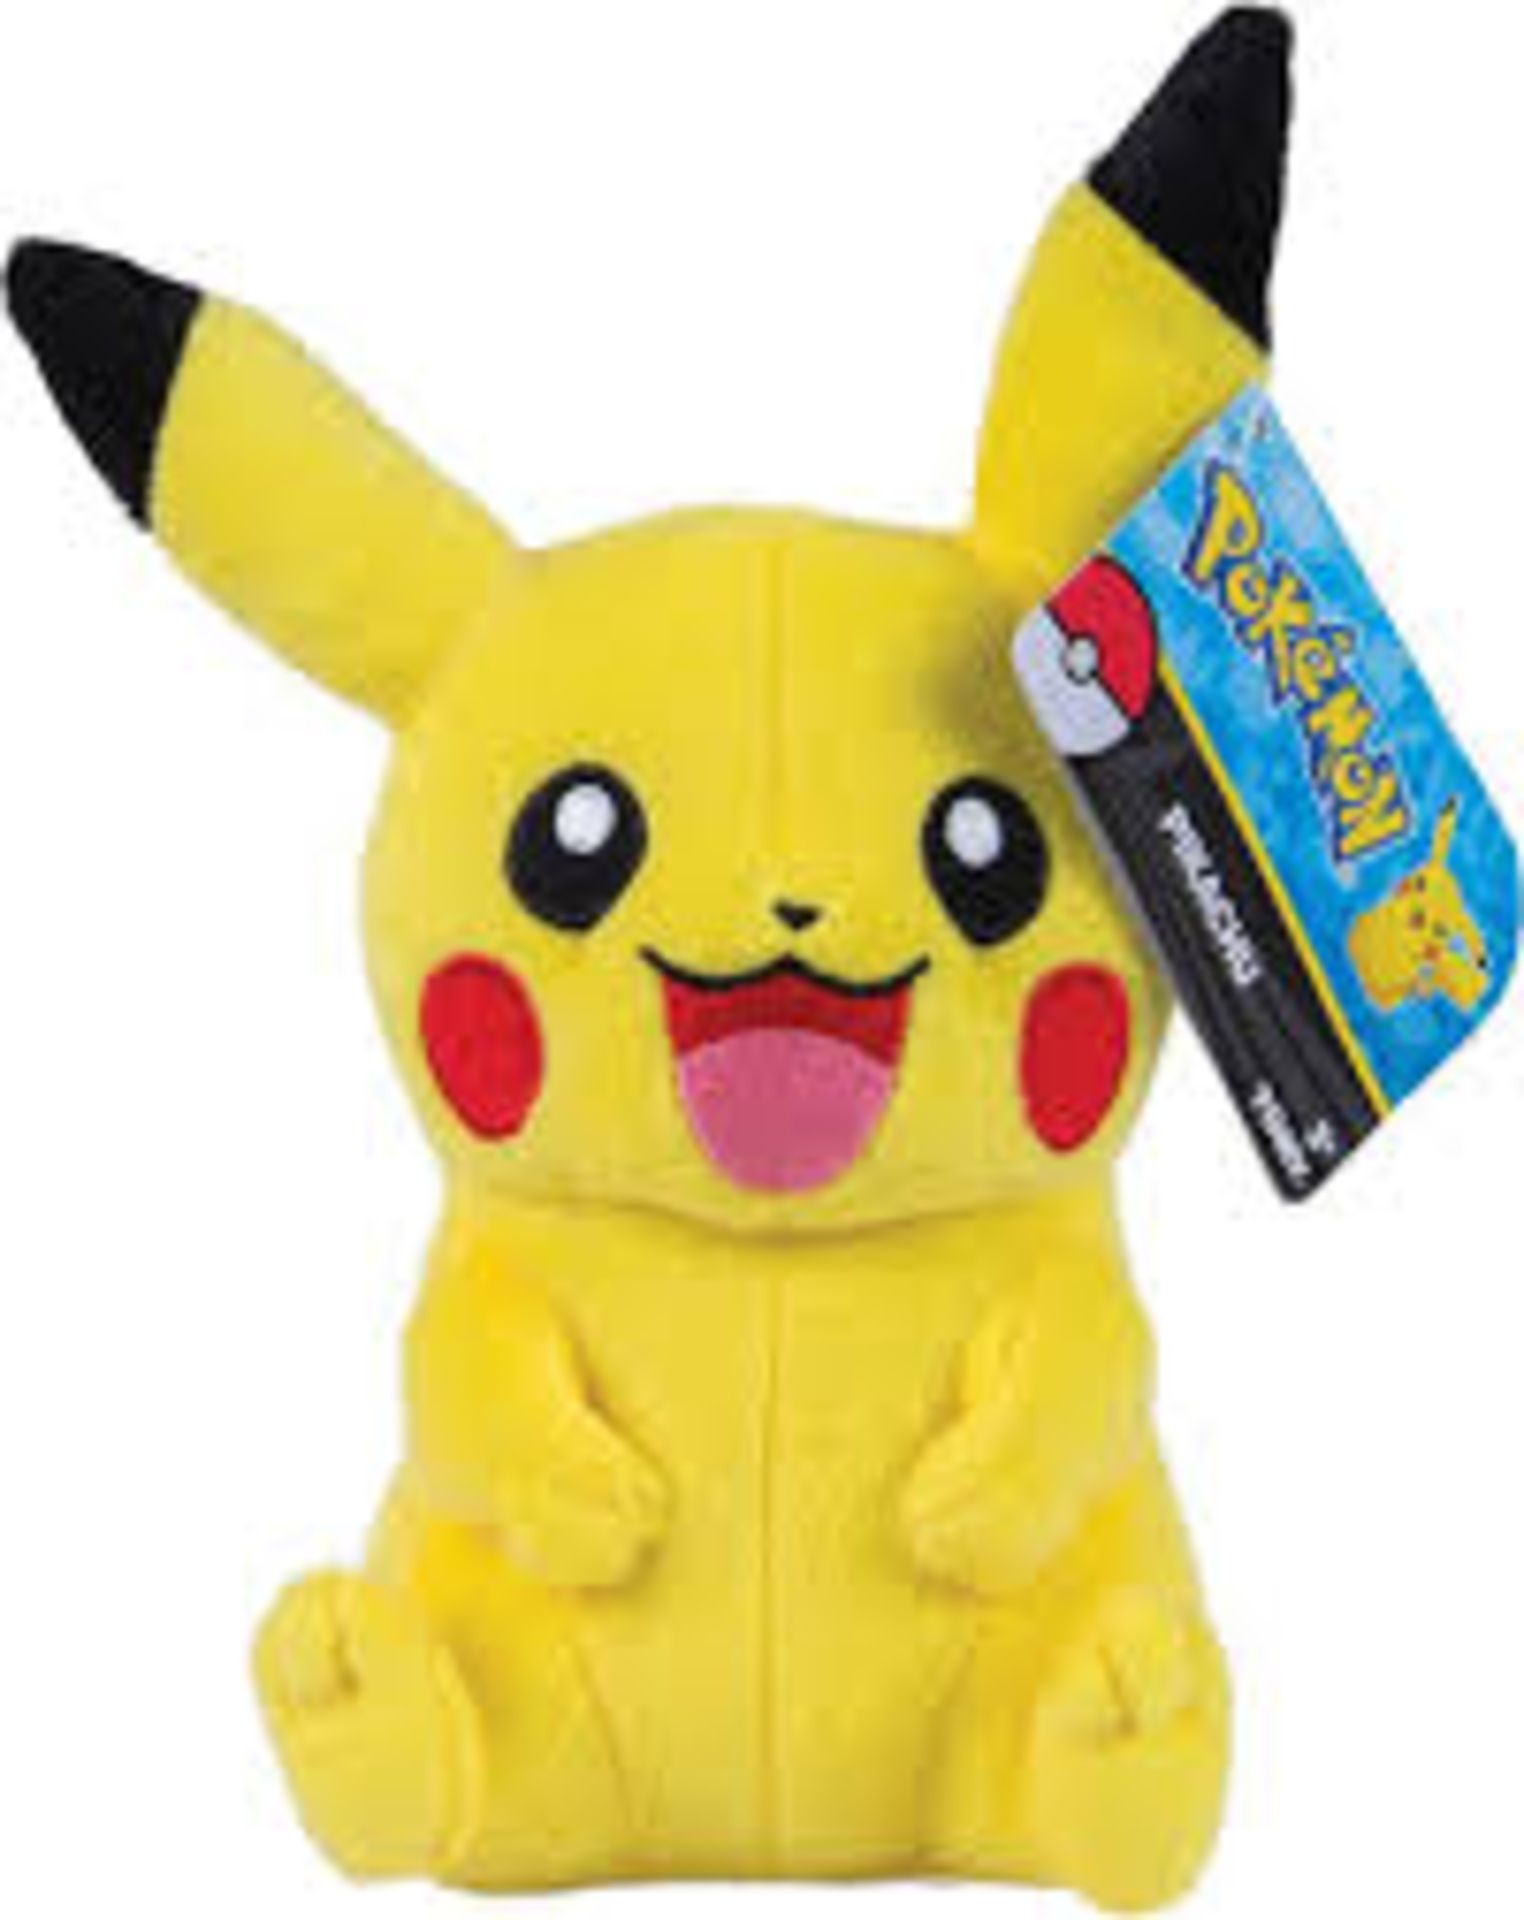 36 x Pokemon Pikachu 8-Inch Plush Toy | 53941185879 | RRP £ 467.64